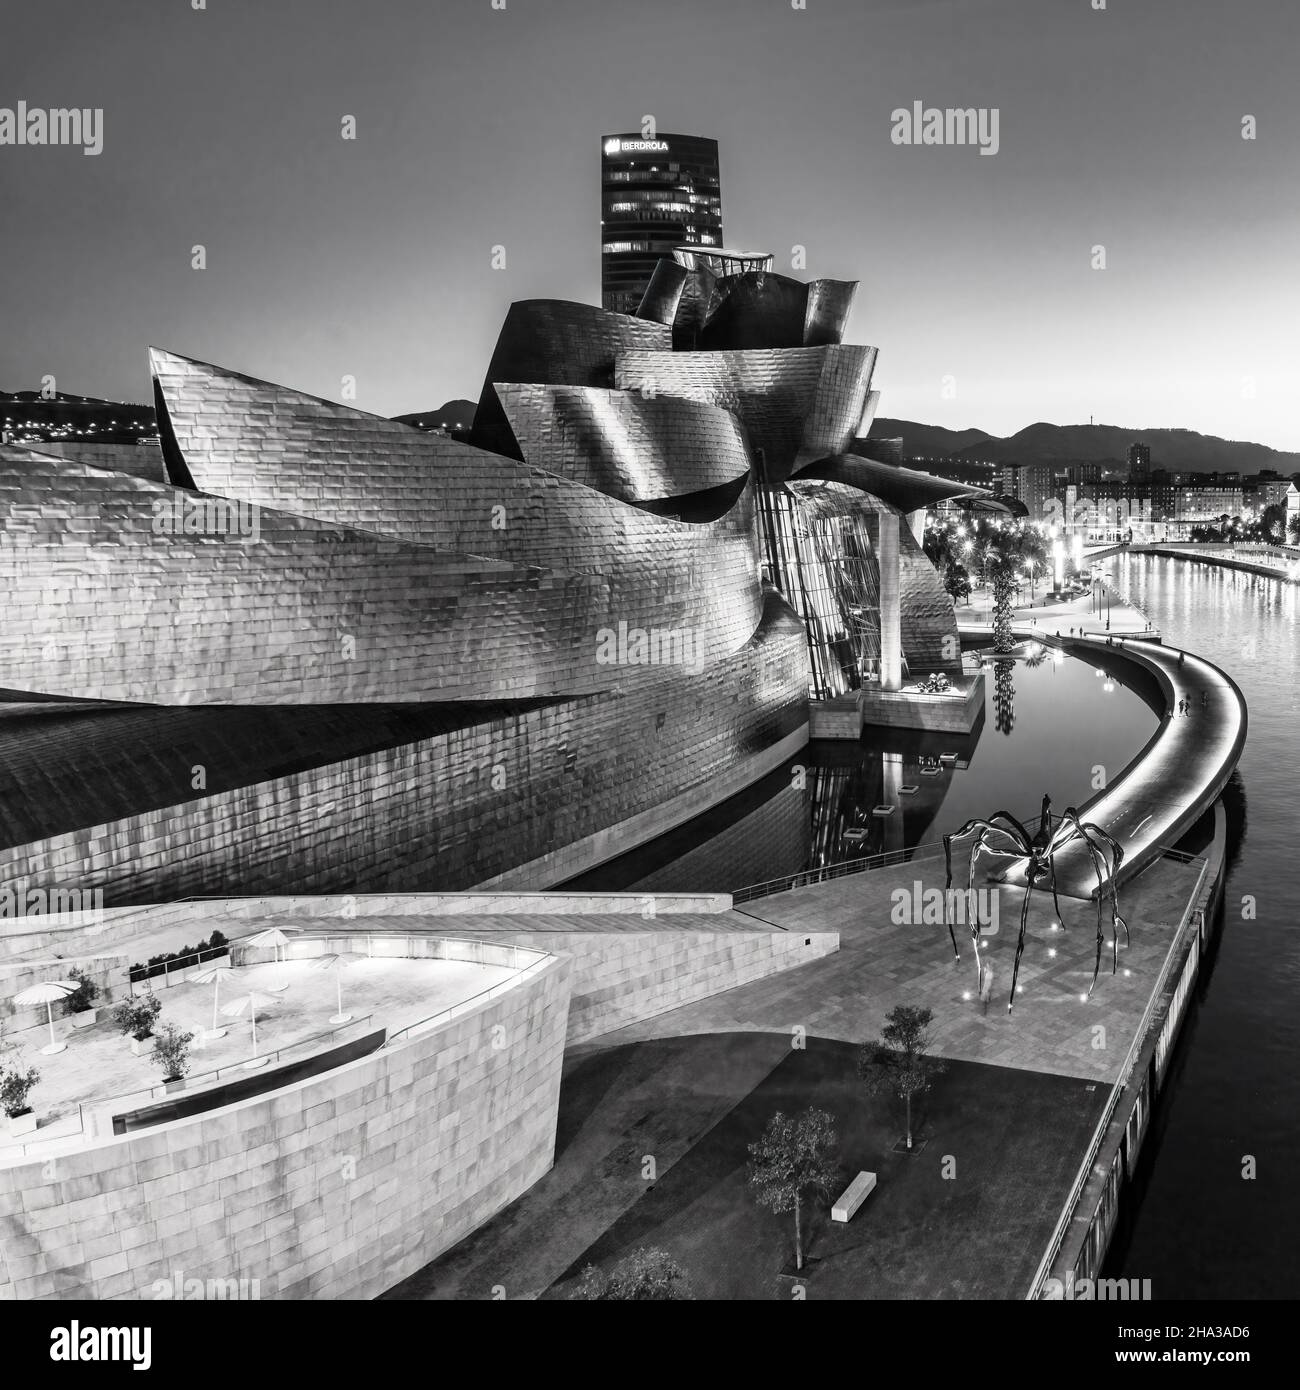 Guggenheim Museum vom Architekten Frank Gehry, Bilbao, Baskenland, Spanien (nur redkationelle Nutzung) Stock Photo